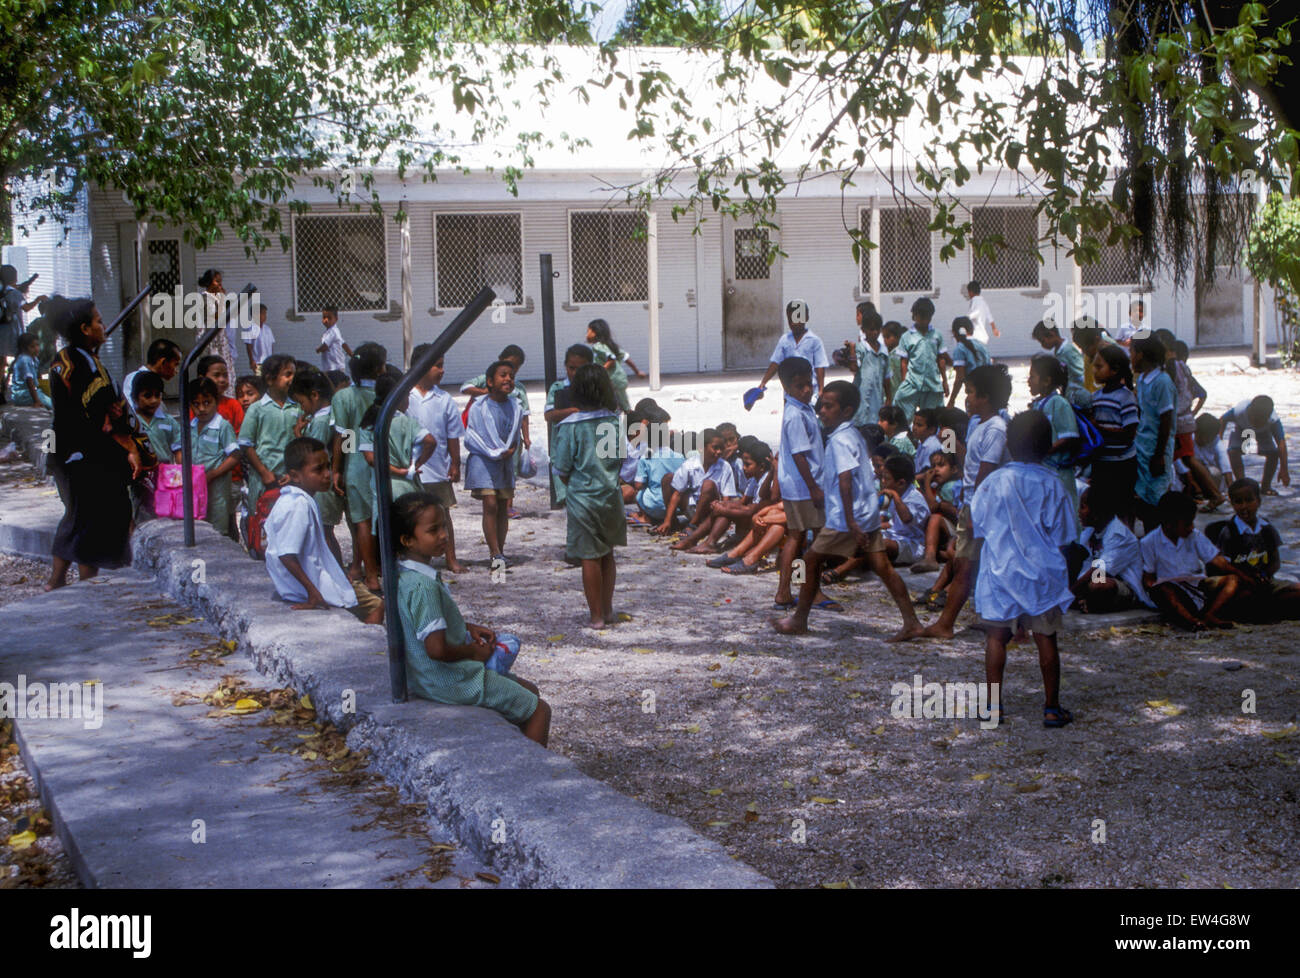 Cours d'école pendant la pause déjeuner. République de Nauru, Pacifique central Banque D'Images